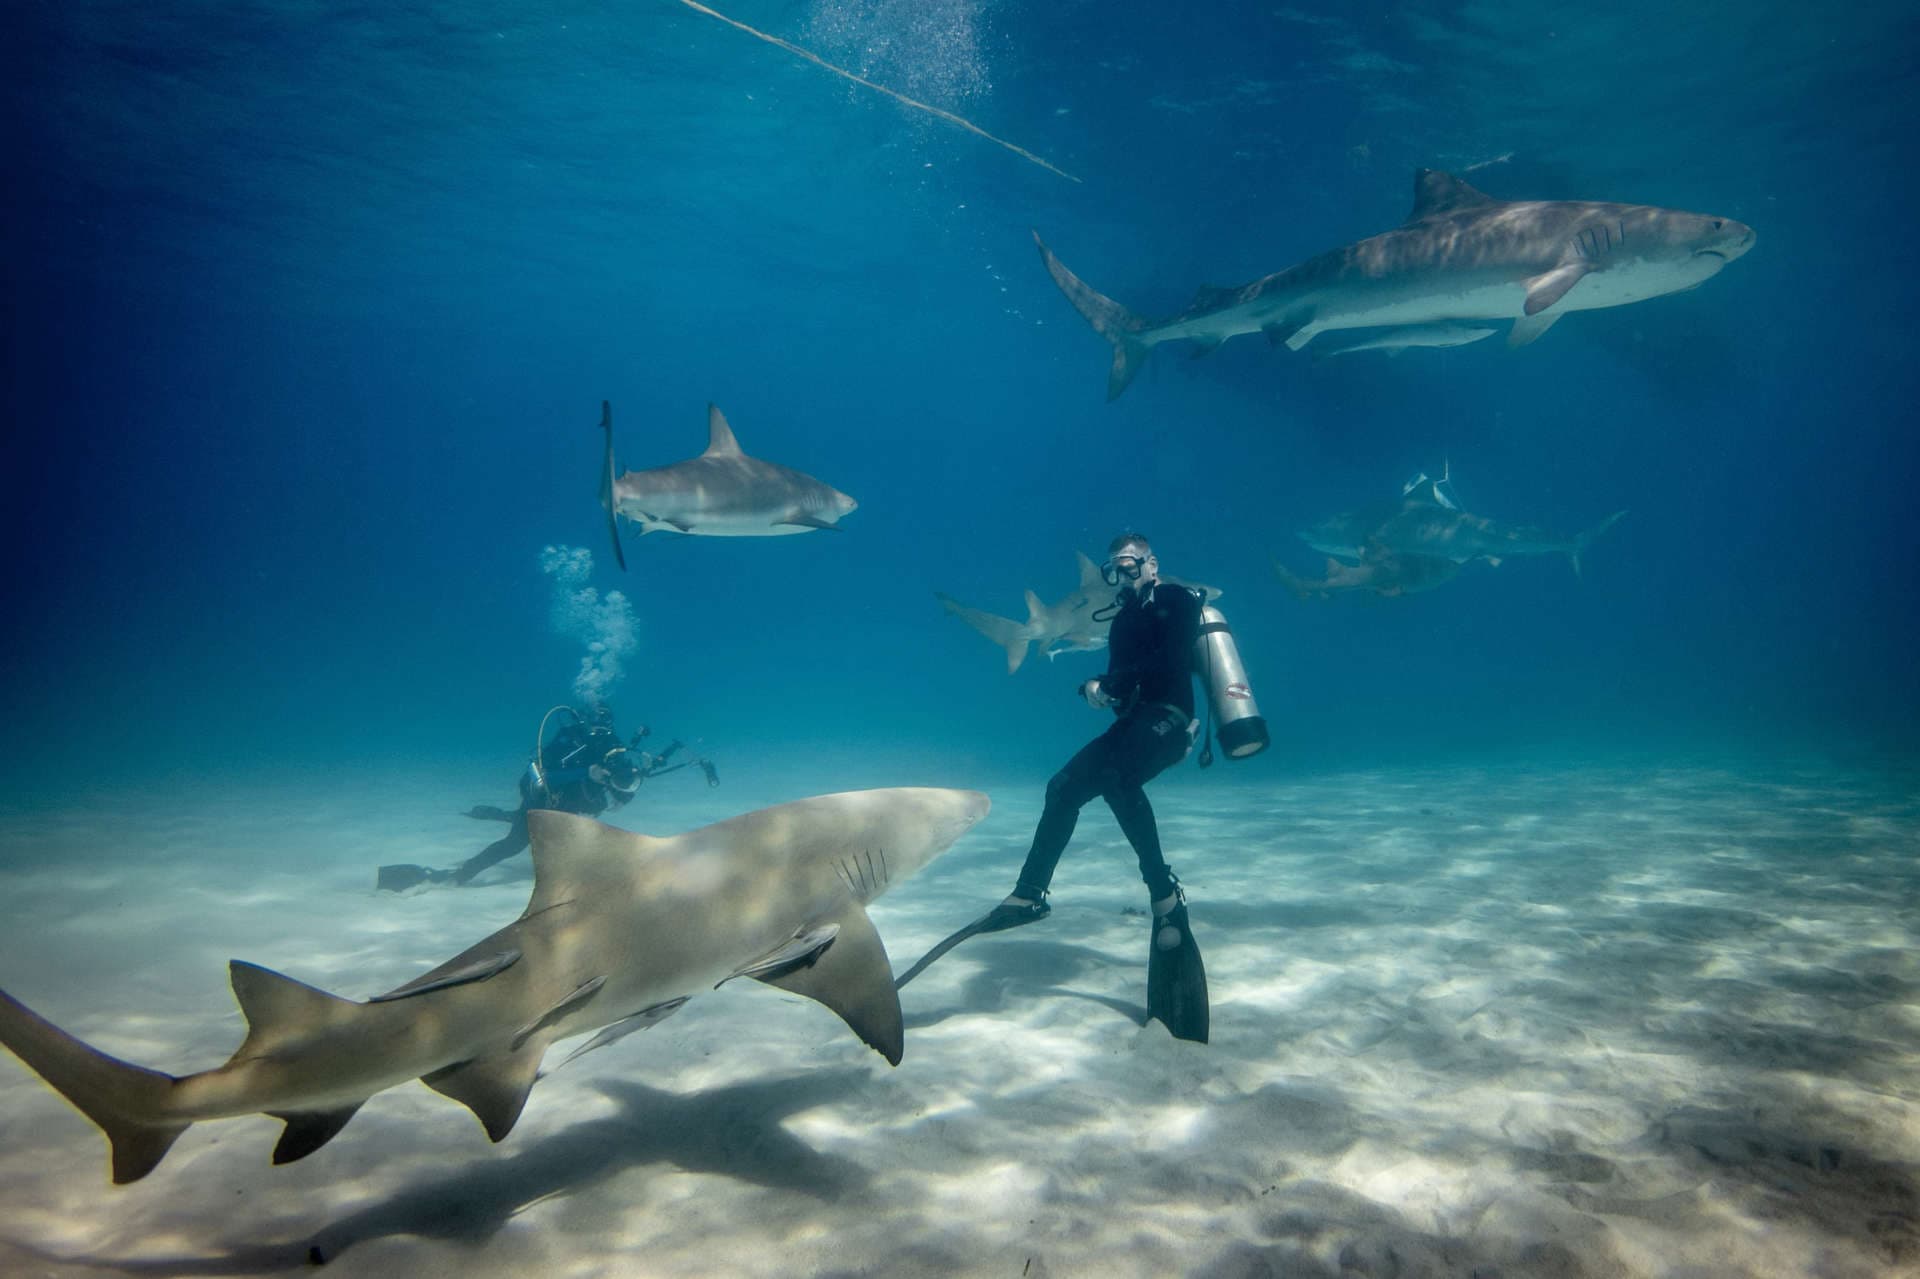 Tiger sharks at the Bahamas